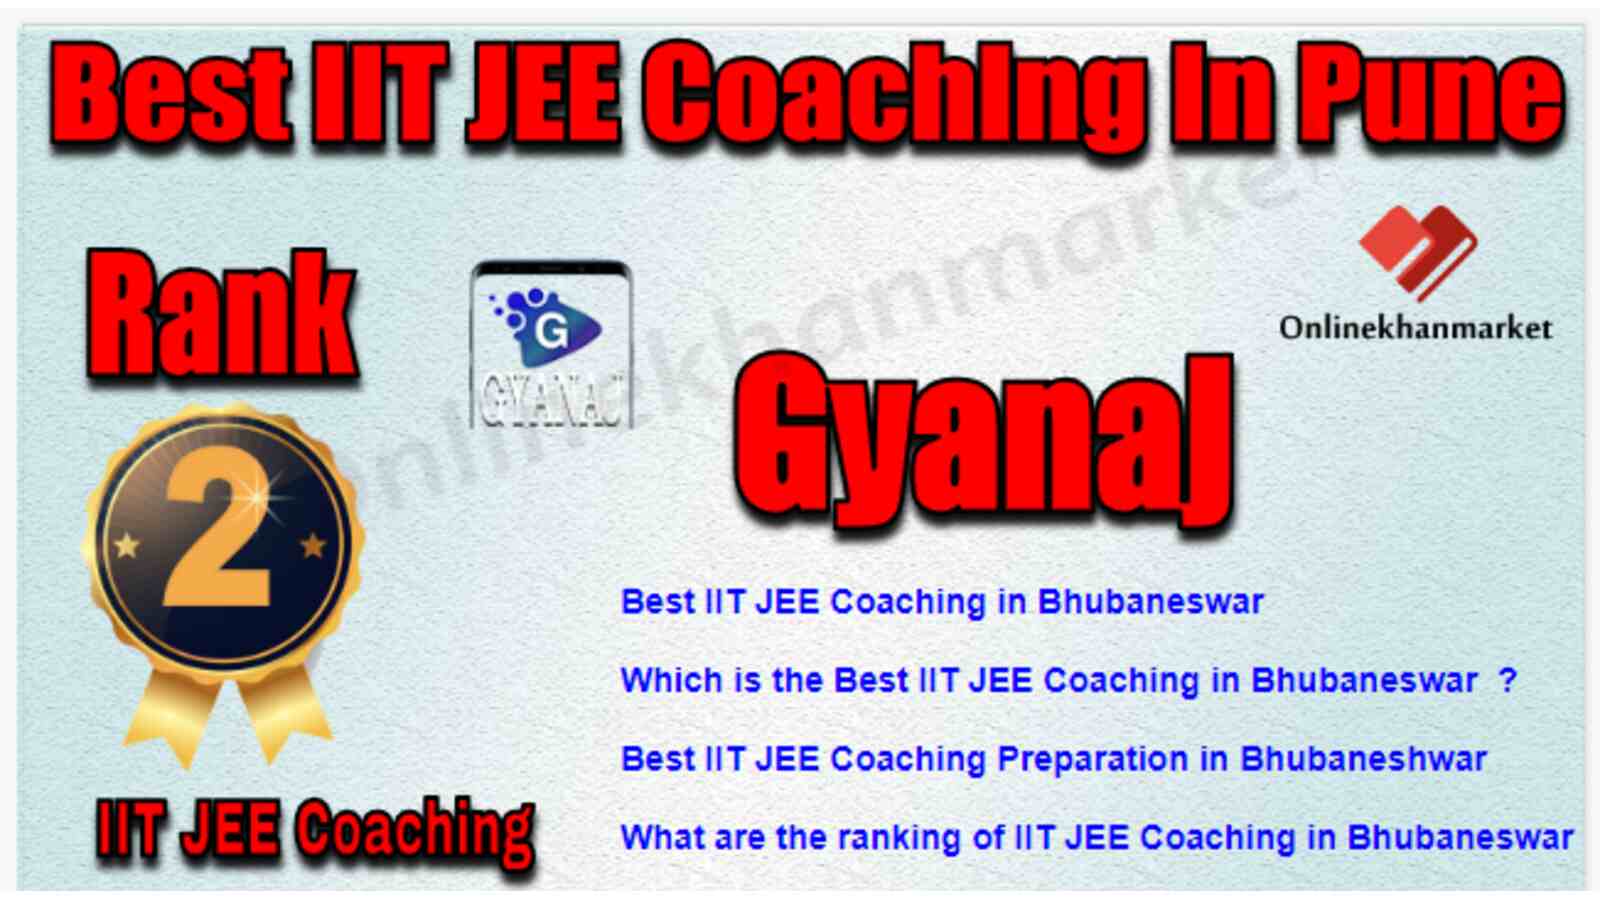 Rank 2 Best IIT JEE Coaching in Bhubaneshwar